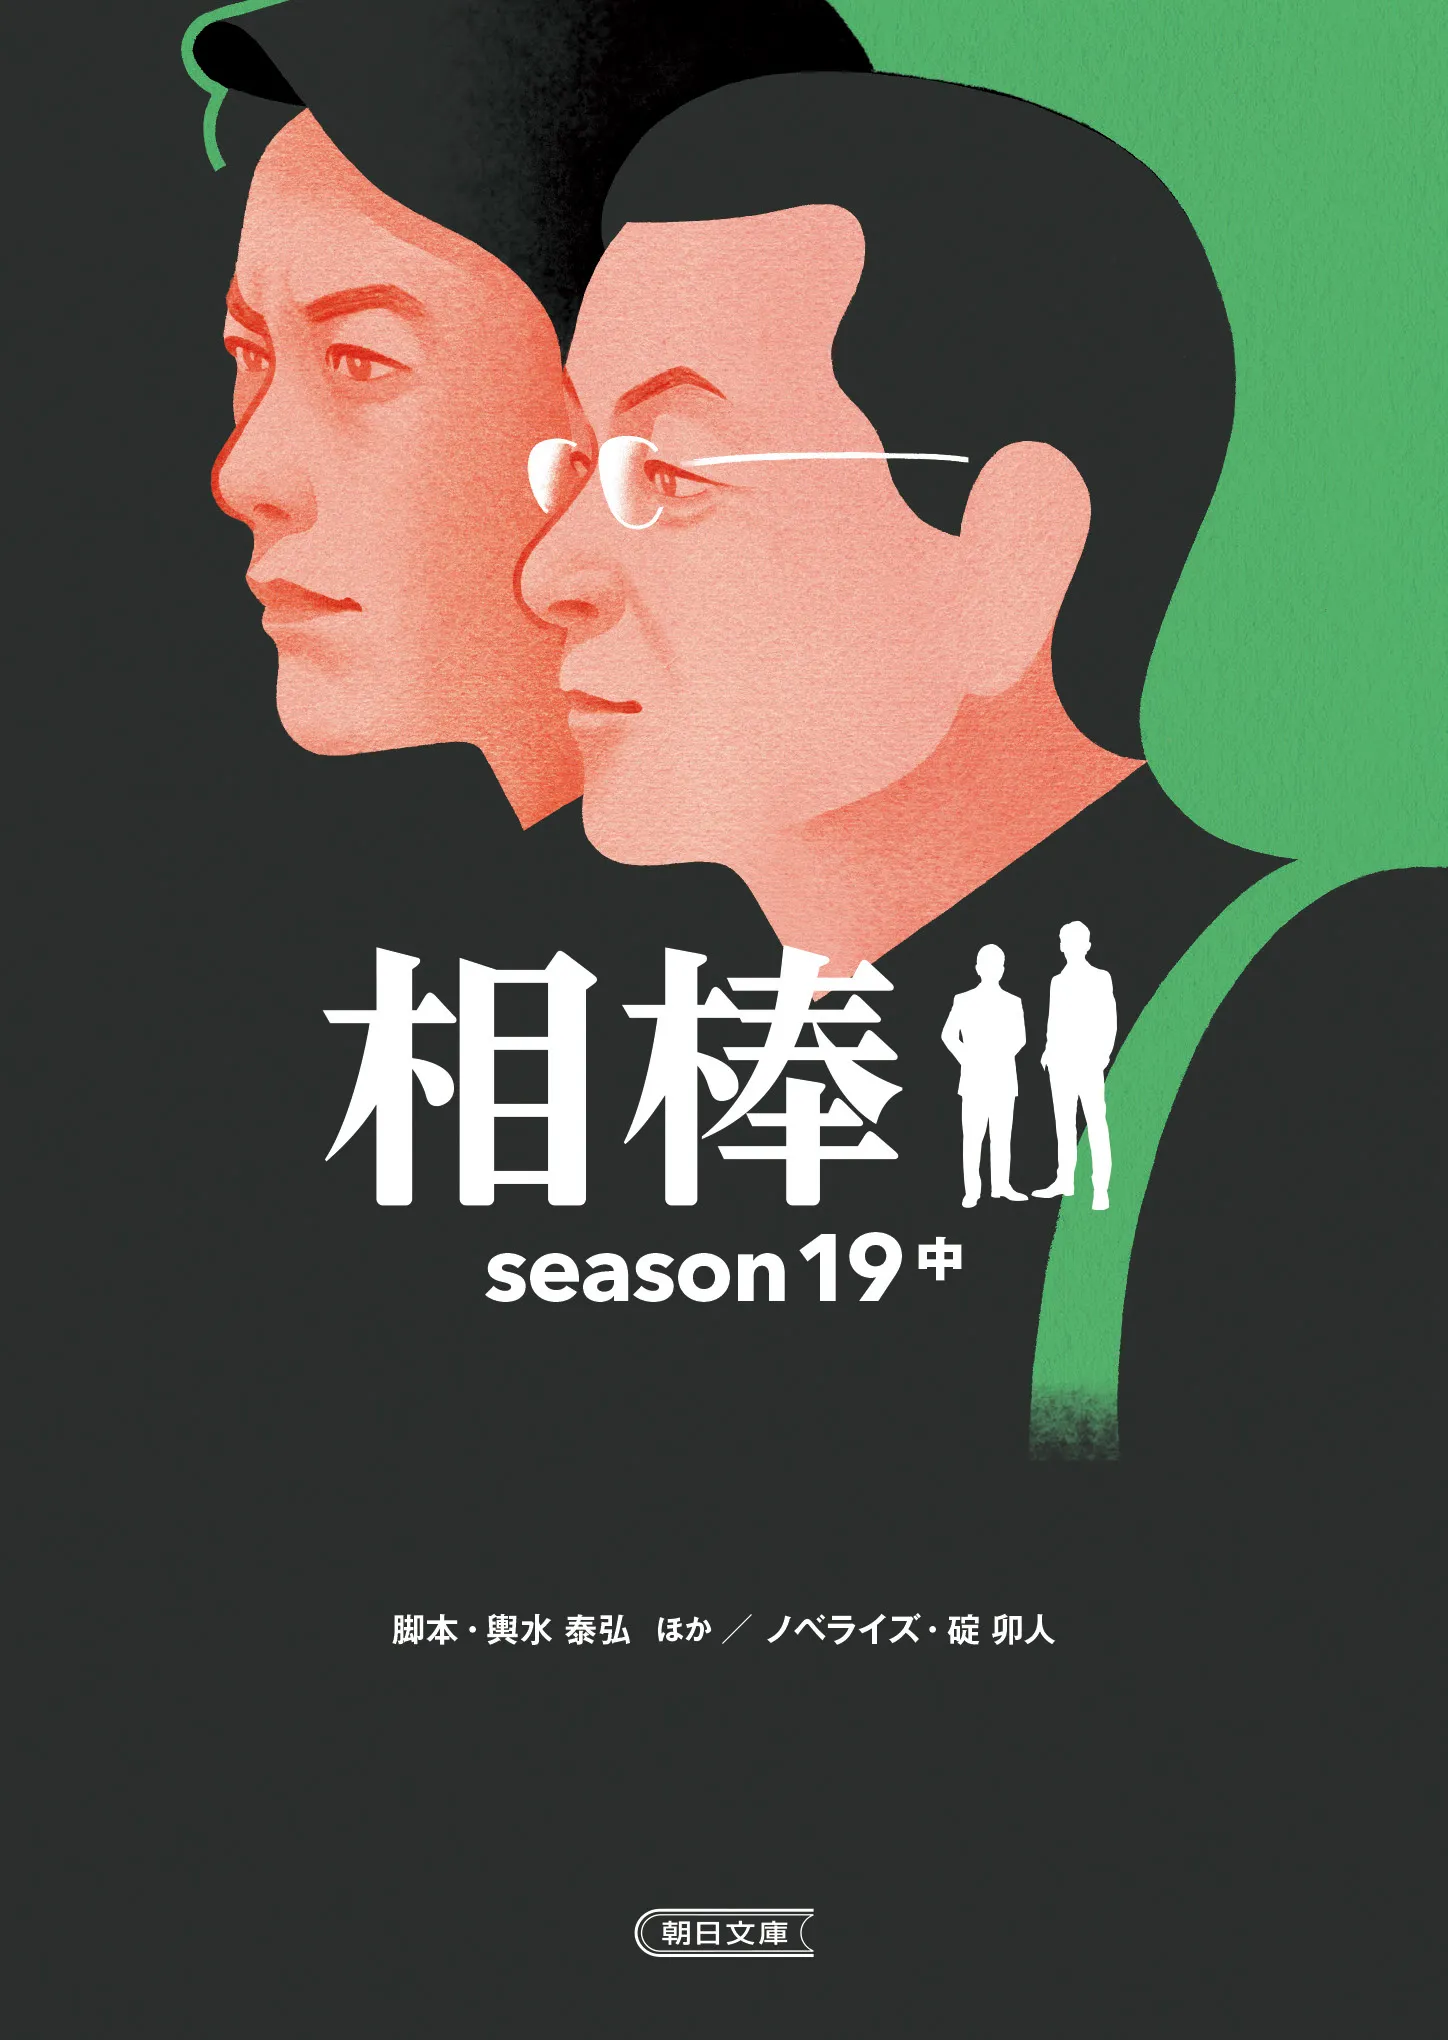 『相棒season19 上・中・下巻』 装画